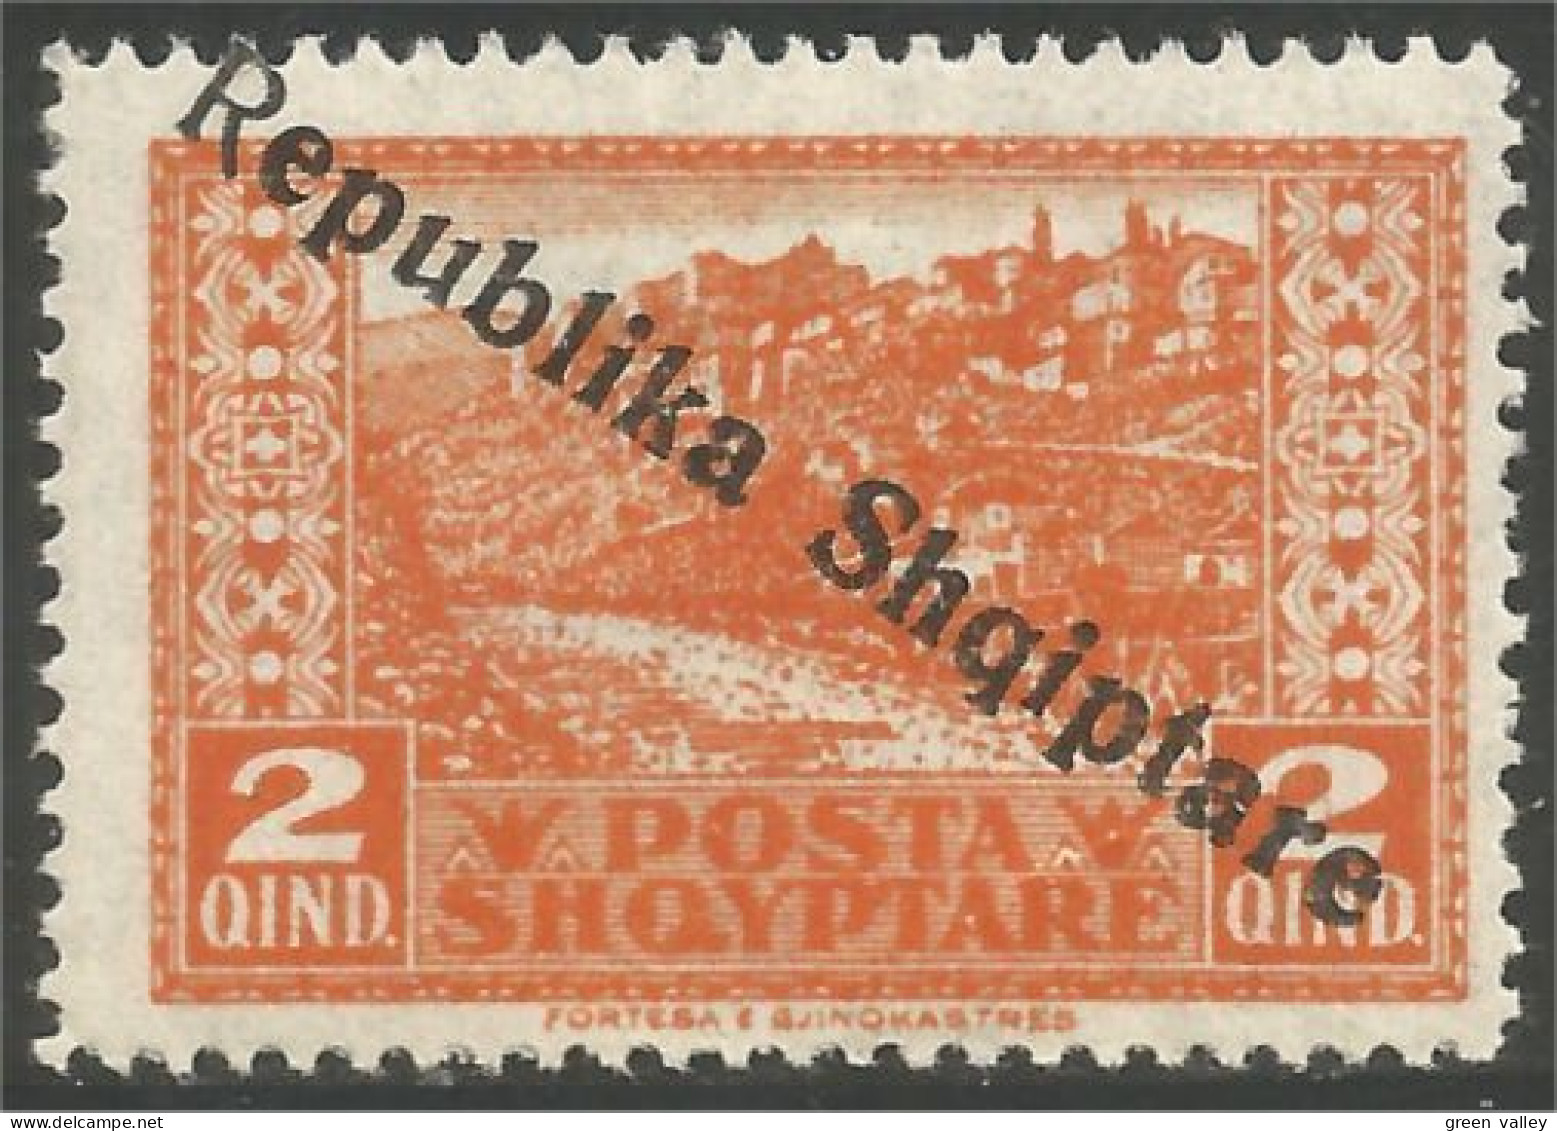 120 Albanie 1925 Surcharge Gjirokaster MH * Neuf (ALB-211a) - Albanie